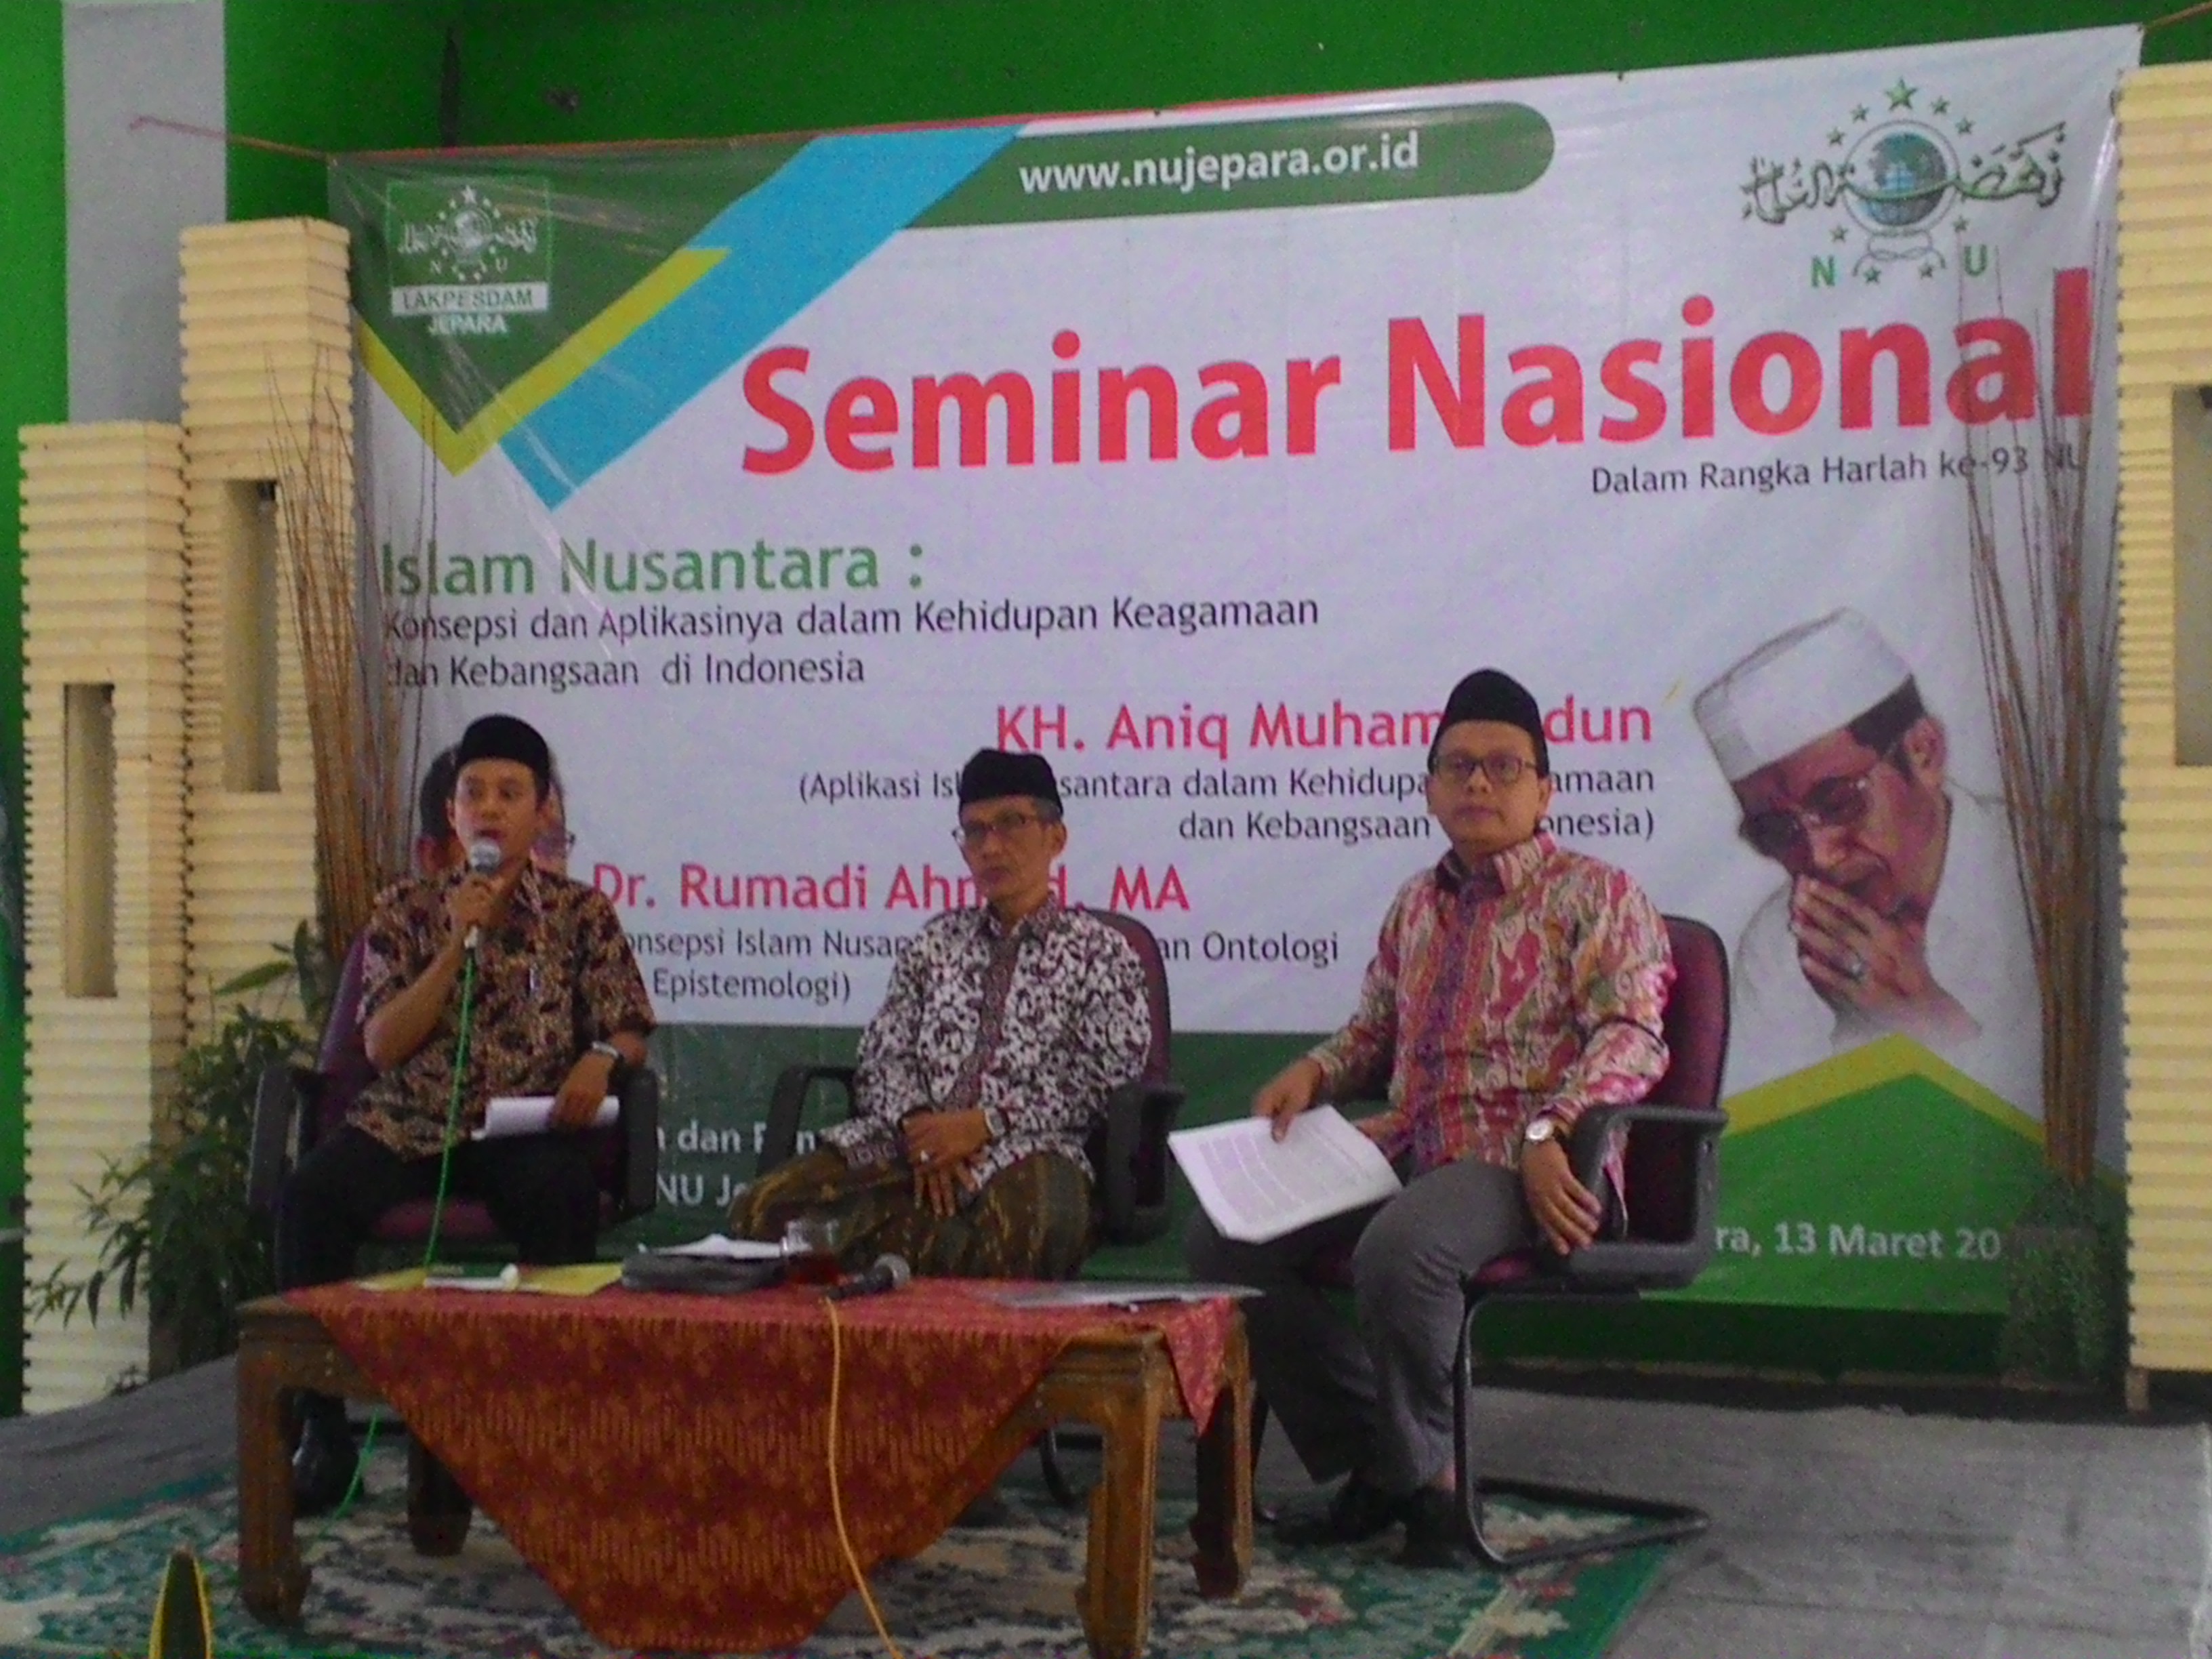 Islam Nusantara Membingkai Islam yang Sudah Ada | NU JEPARA